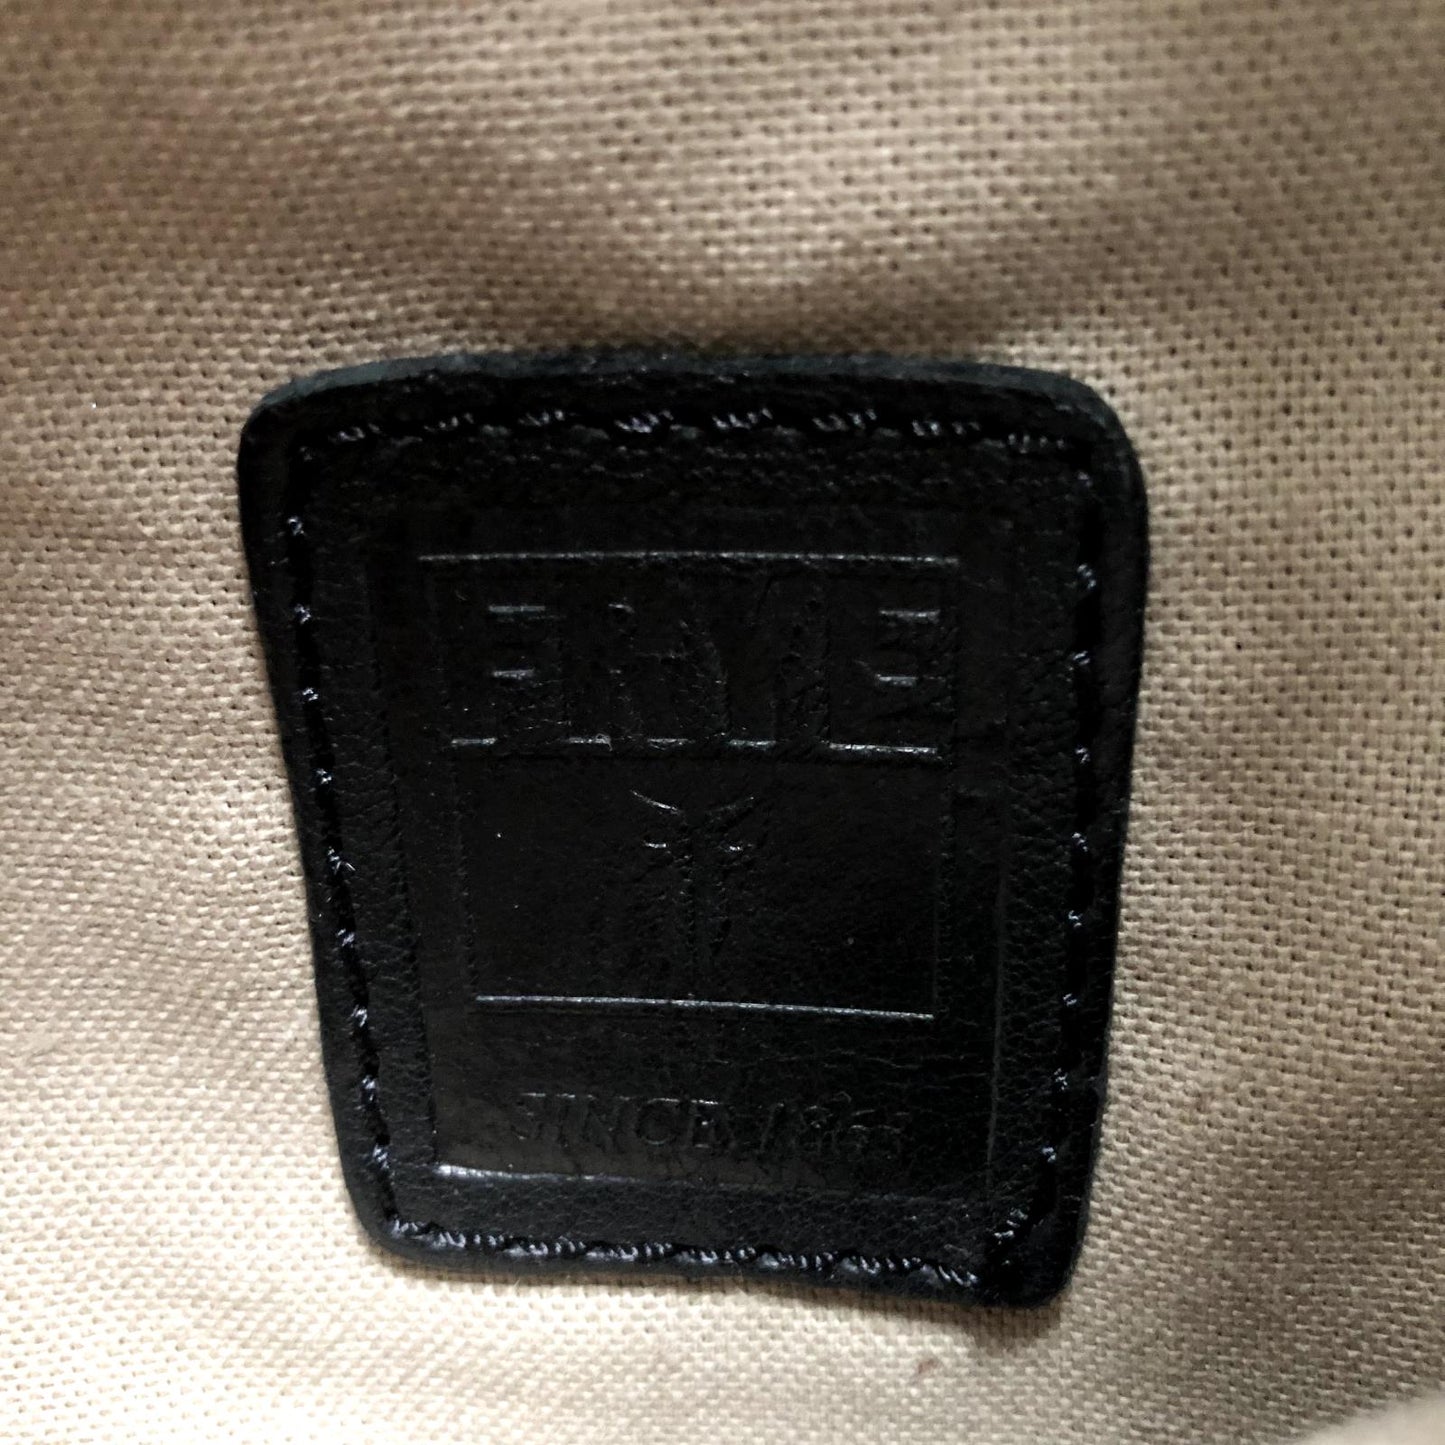 Frye $598 Black Leather Farrah Fringe Large Hobo Tote Bag 1216JB